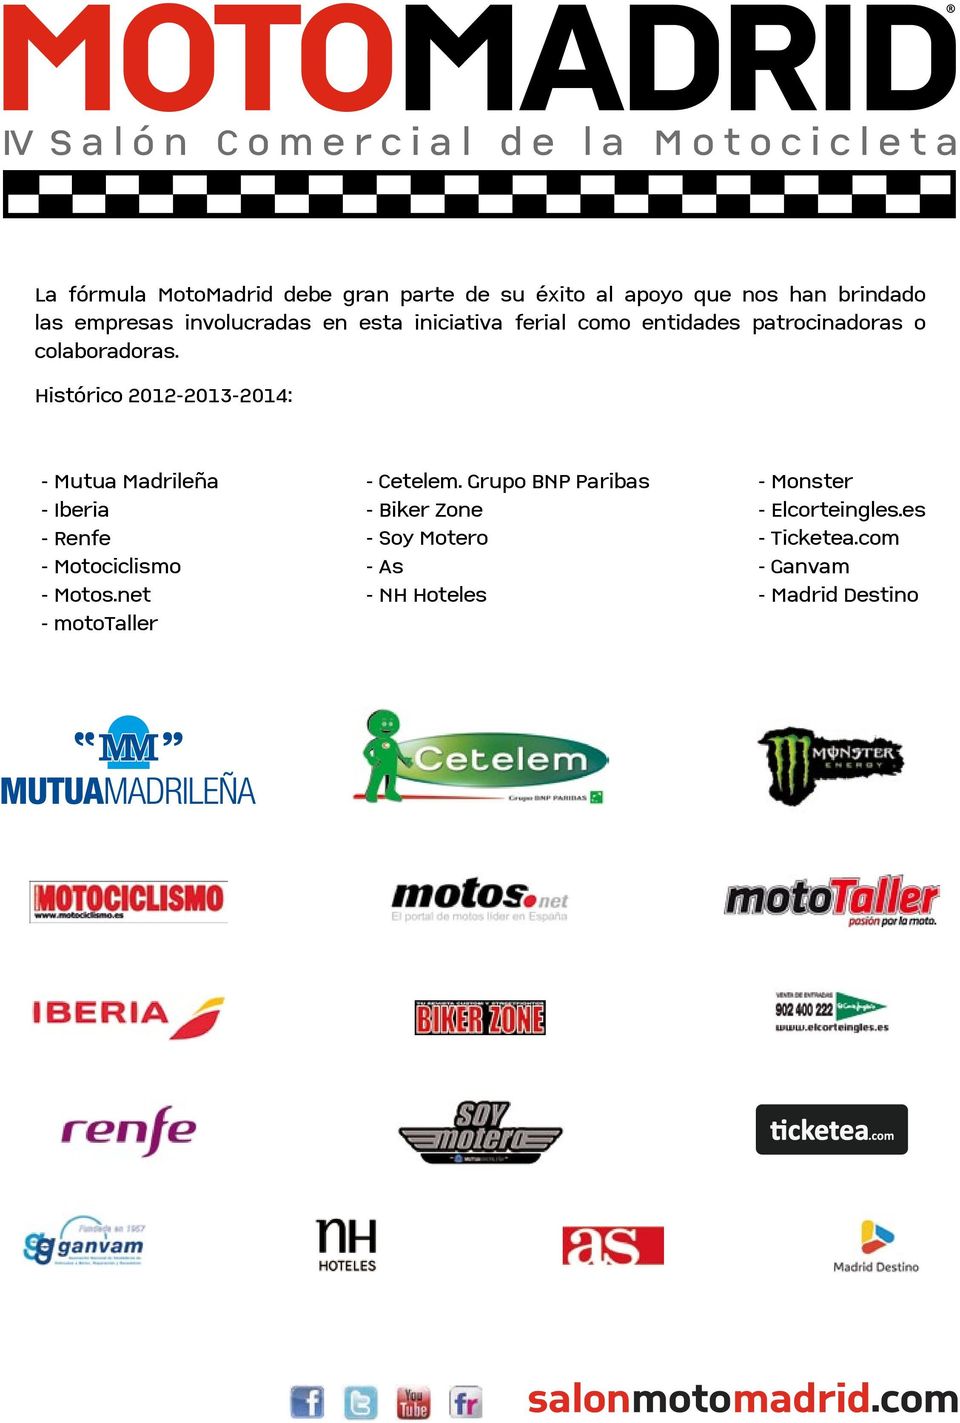 Histórico 2012-2013-2014: - Mutua Madrileña - Iberia - Renfe - Motociclismo - Motos.